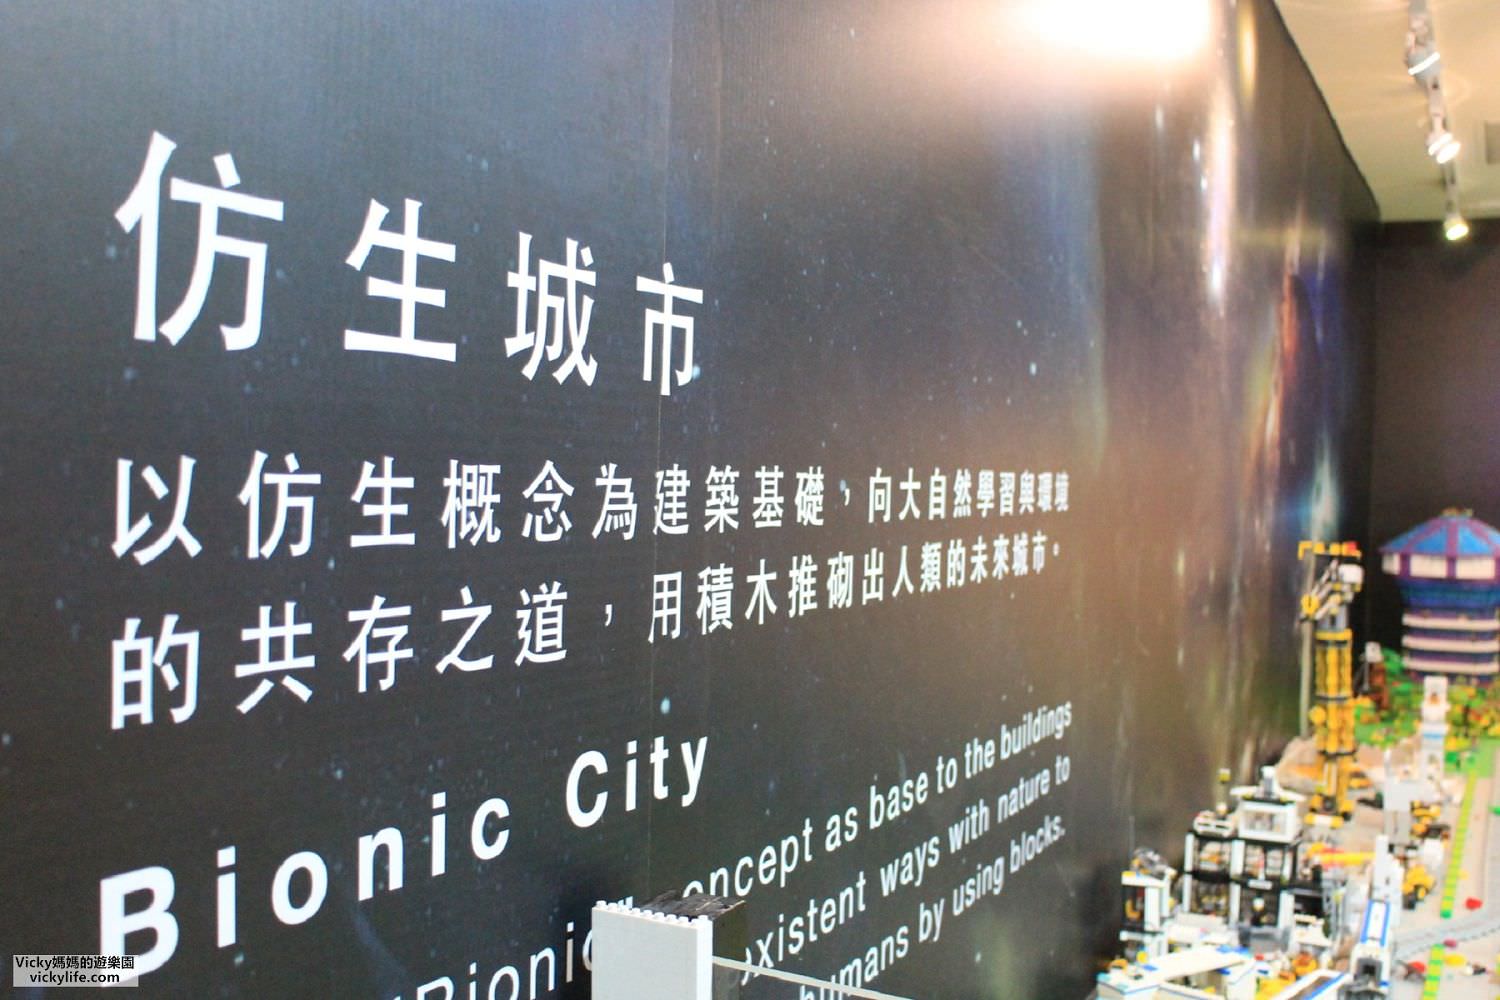 台南旅遊景點︱南瀛天文館：賞星星和浩瀚宇宙、玩仿生城市積木、訪天文圖書館，這真是超級豐富的園區(2021更新)